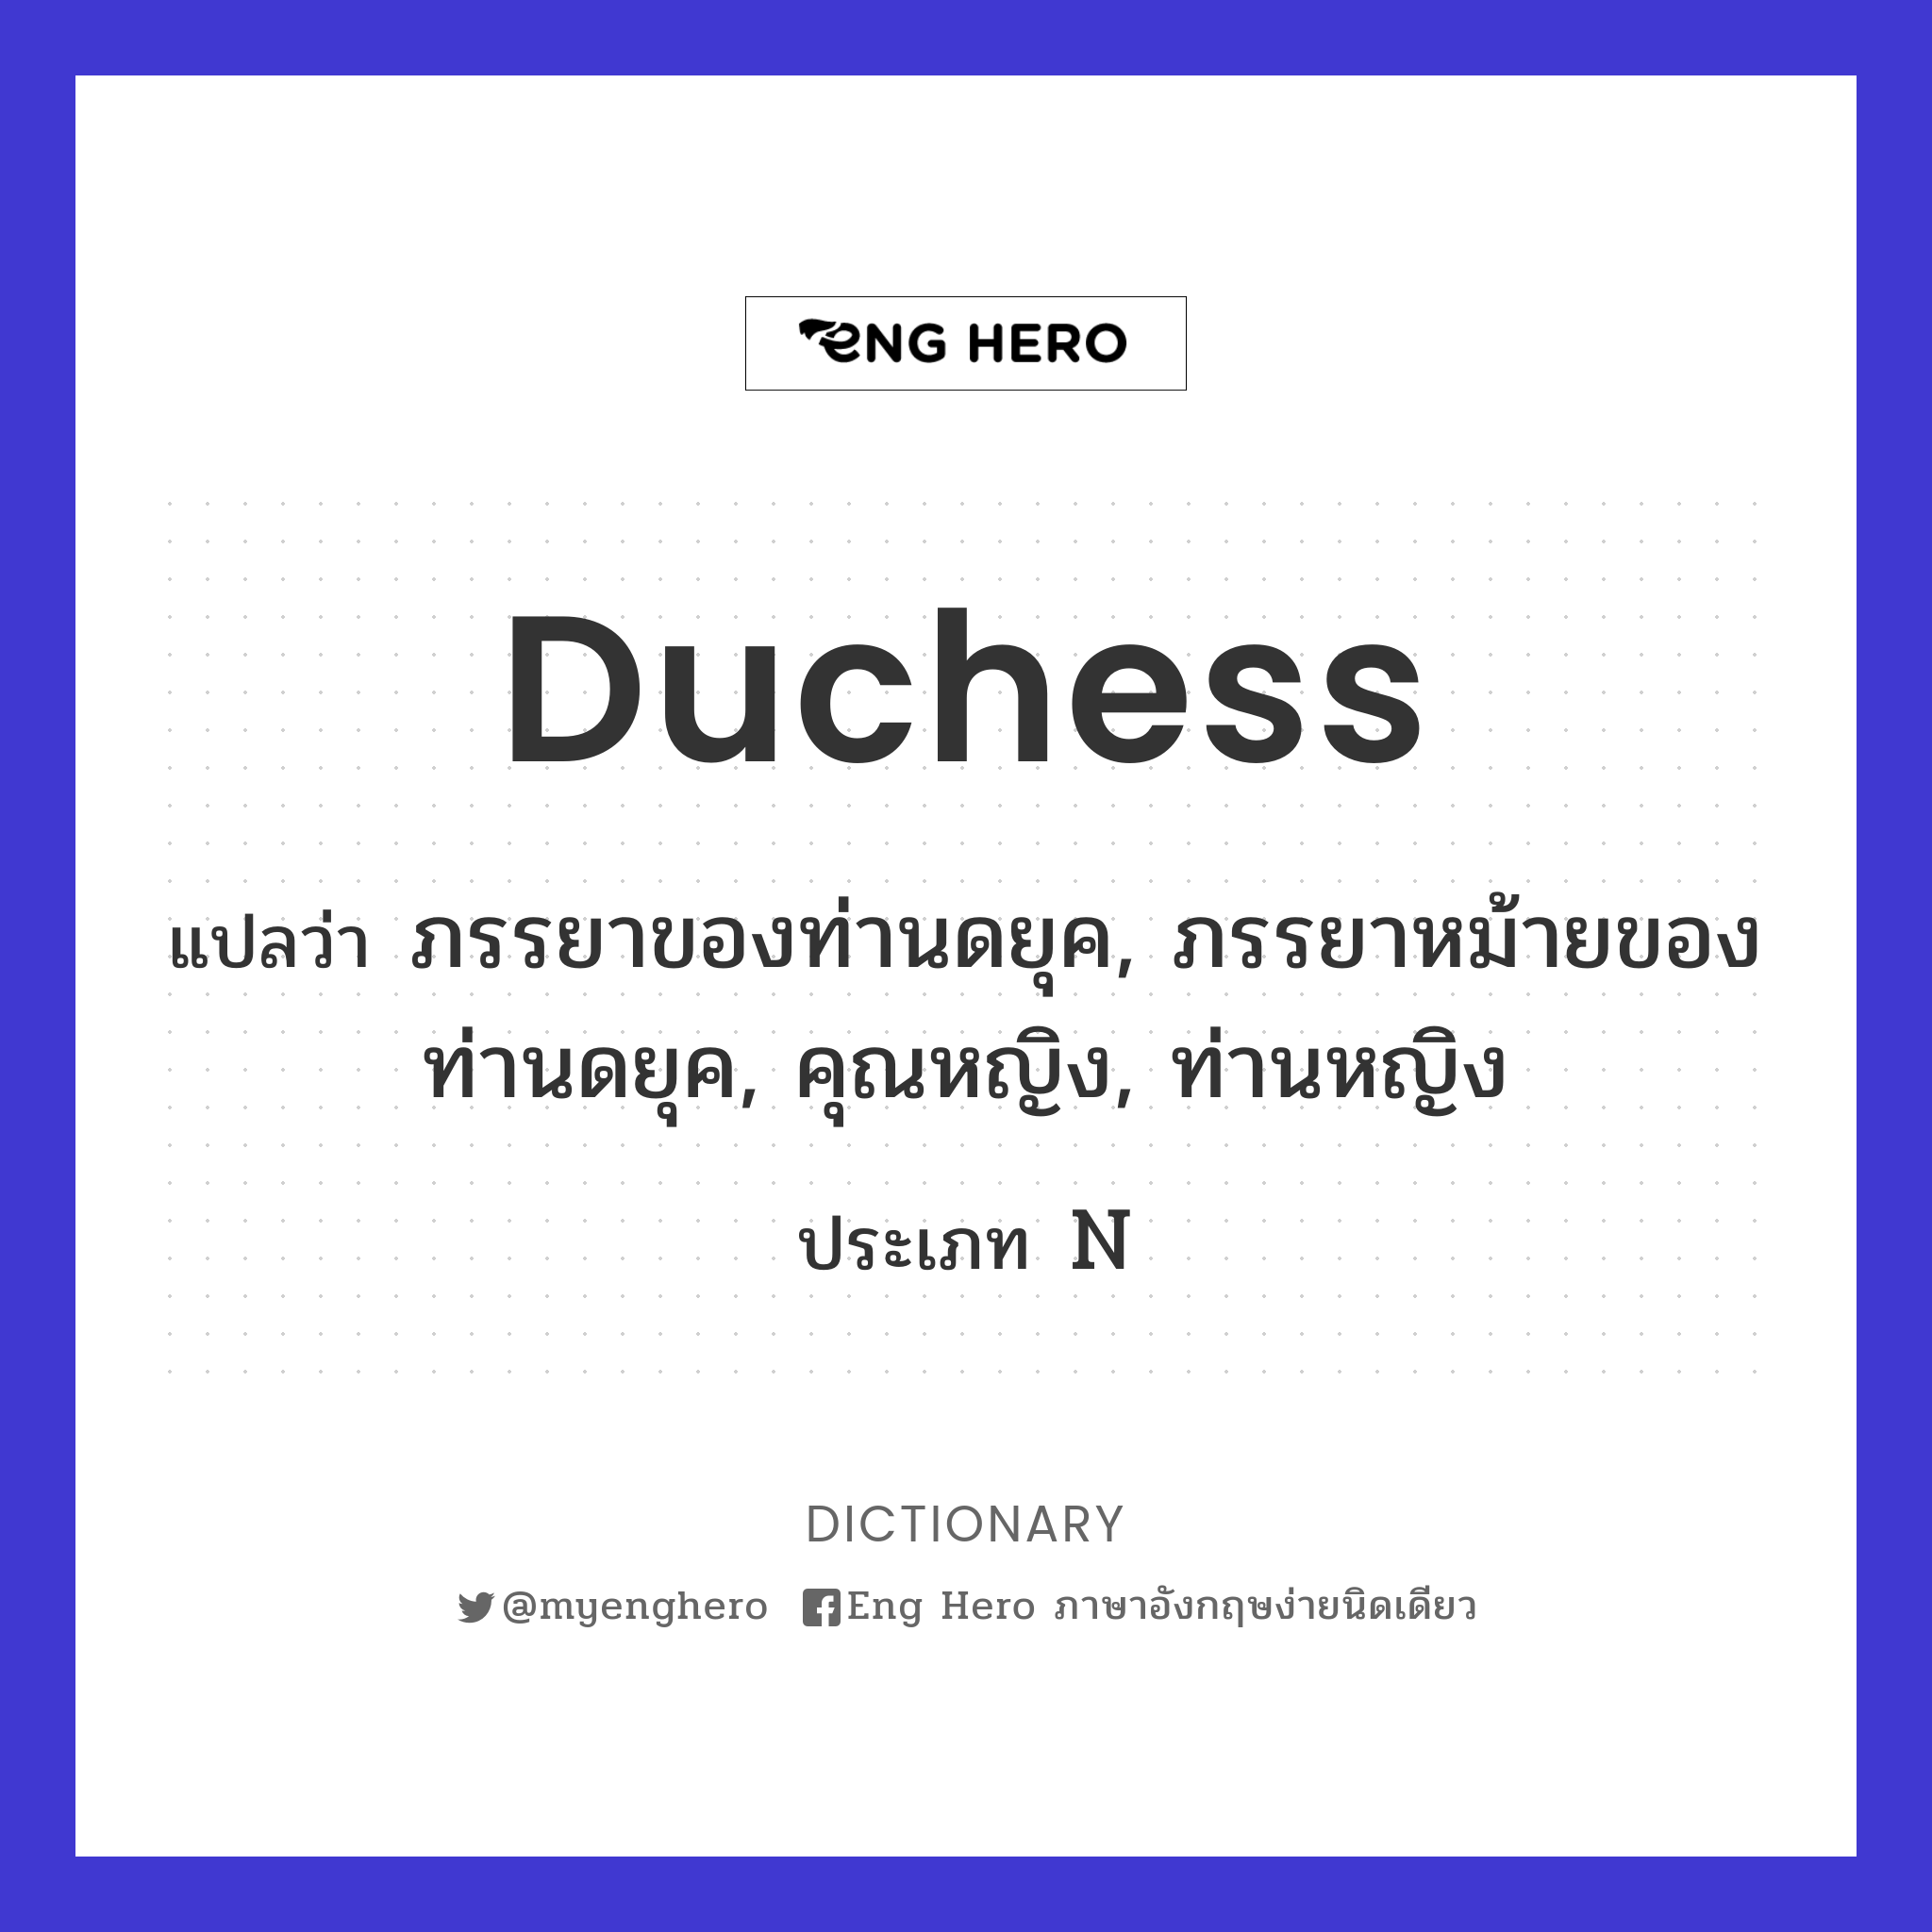 Duchess แปลว่า ภรรยาของท่านดยุค, ภรรยาหม้ายของท่านดยุค, คุณหญิง, ท่านหญิง |  Eng Hero เรียนภาษาอังกฤษ ออนไลน์ ฟรี